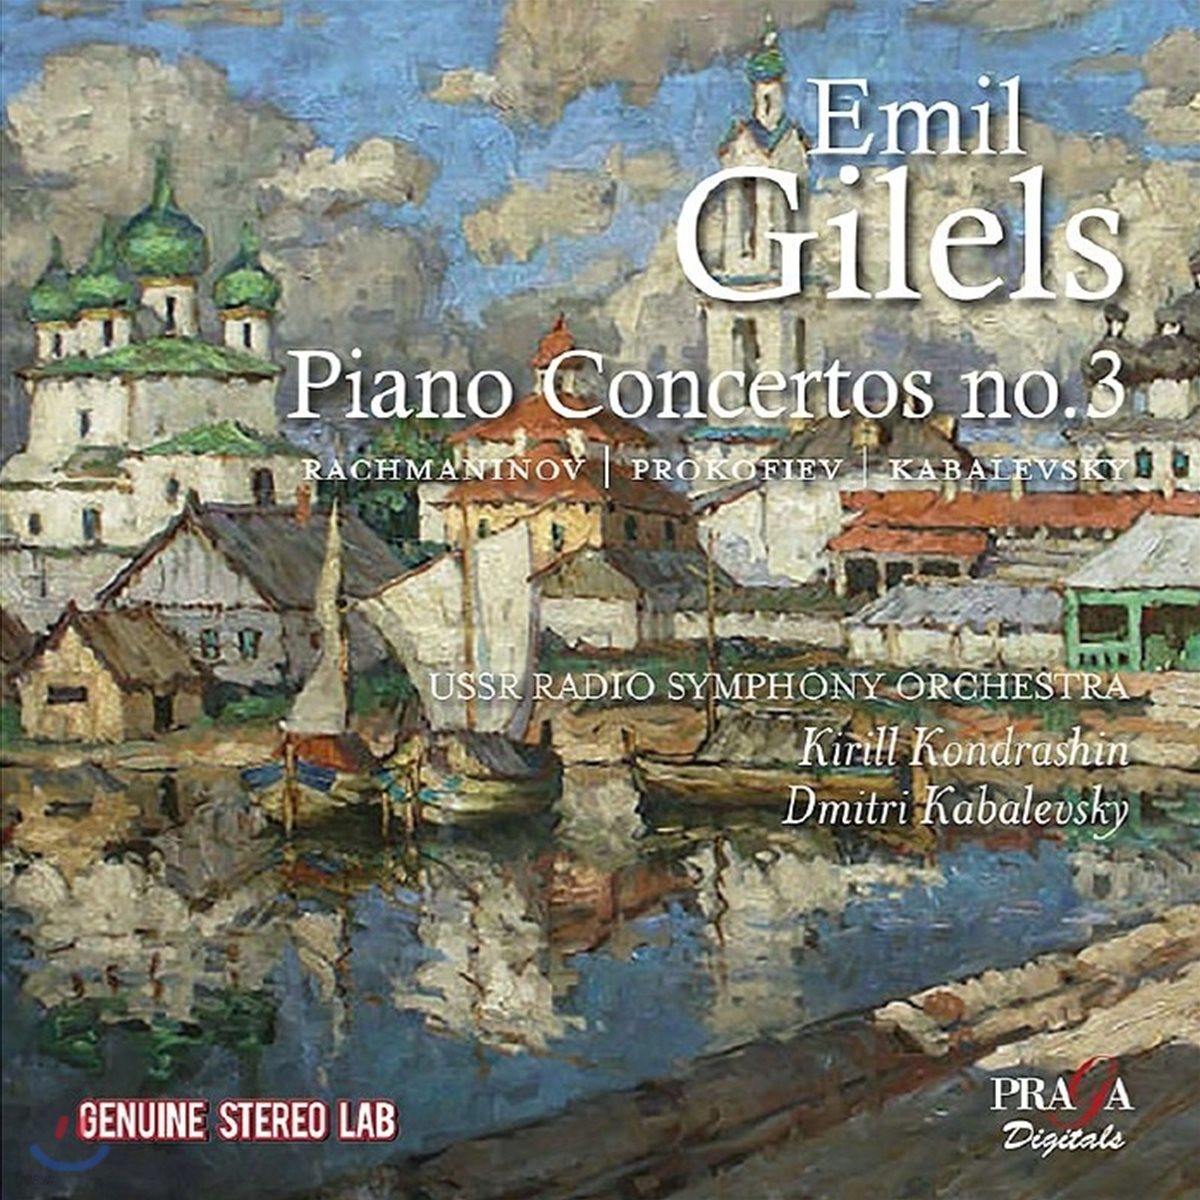 에밀 길렐스가 연주하는 러시아 피아노 협주곡집 - 라흐마니노프 / 프로코피예프 / 카발레프스키 (Emil Gilels plays Russian Piano Concertos - Rachmaninov / Prokofiev / Kabalevsky)